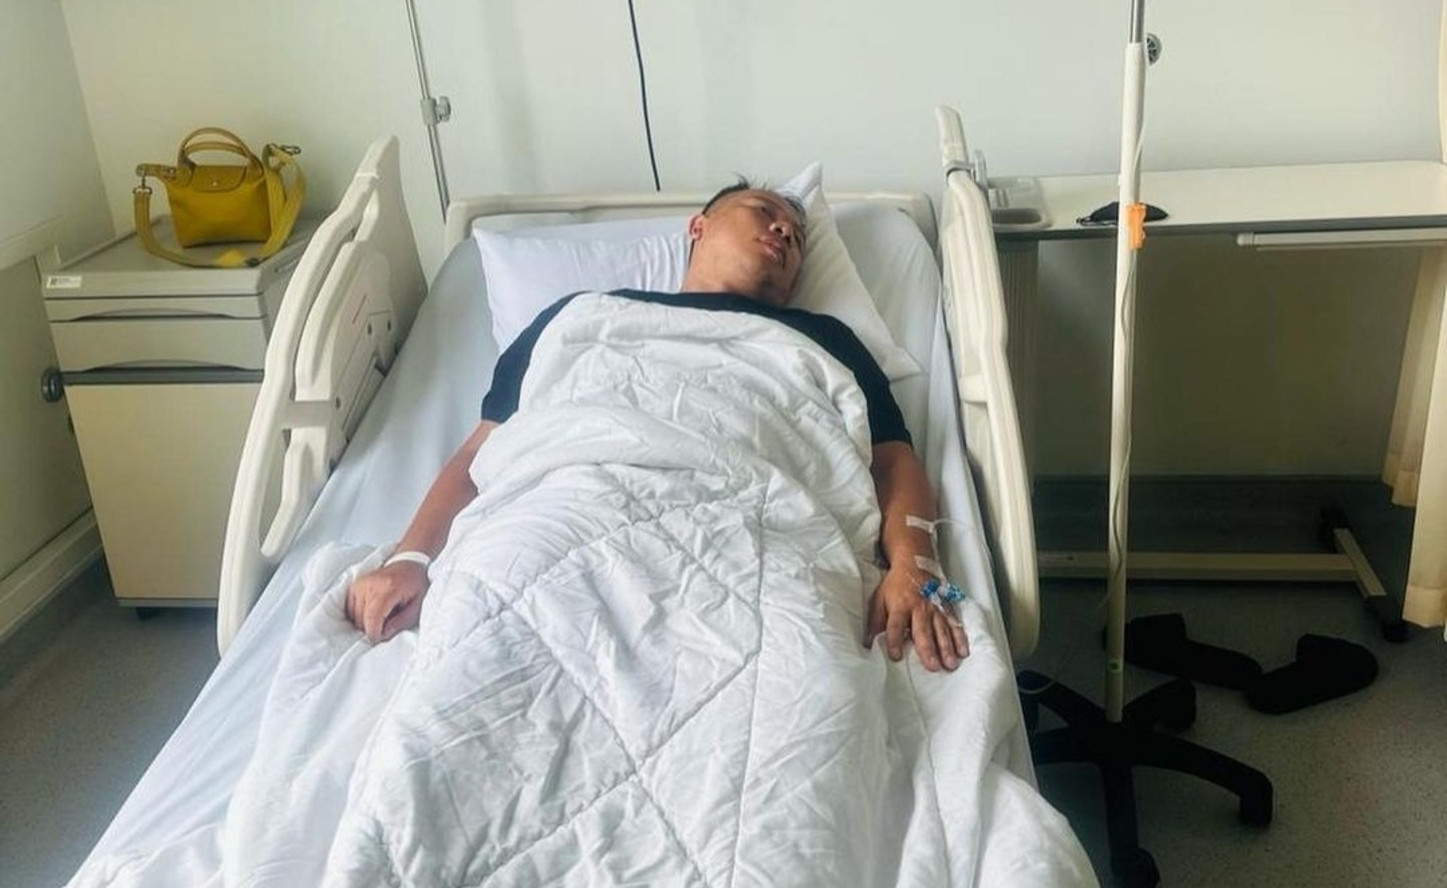 Begini Penampakan Vicky Prasetyo Saat Dirawat di Rumah Sakit - JPNN.com